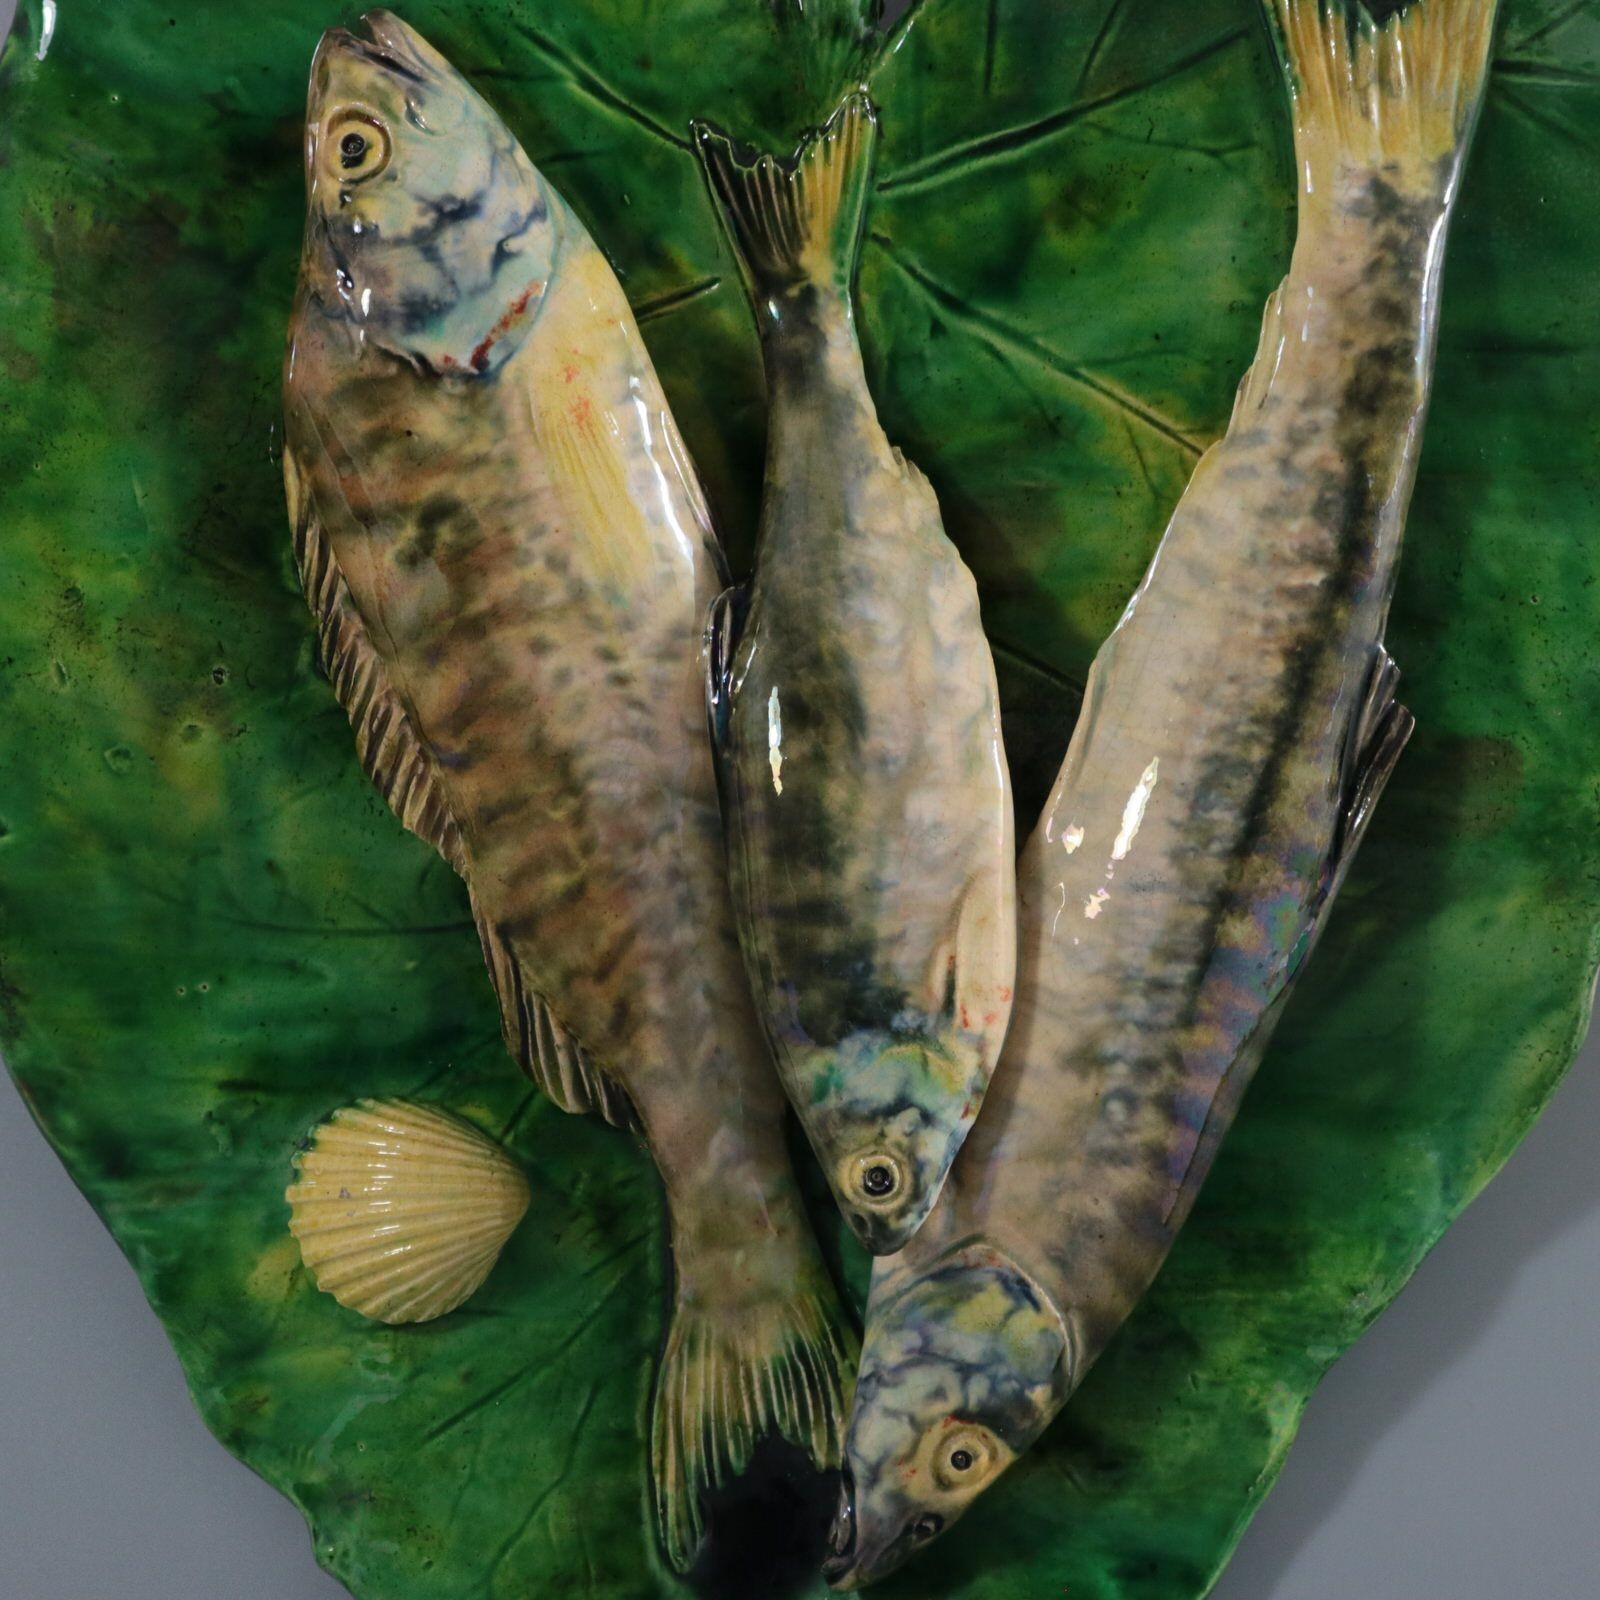 Plaque murale en majolique de Palissy d'Alfred Renoleau, représentant trois poissons superposés sur une grande feuille. Coloration : le vert, le gris, le crème, sont prédominants. La pièce porte les marques du fabricant de la poterie Alfred Renoleau.